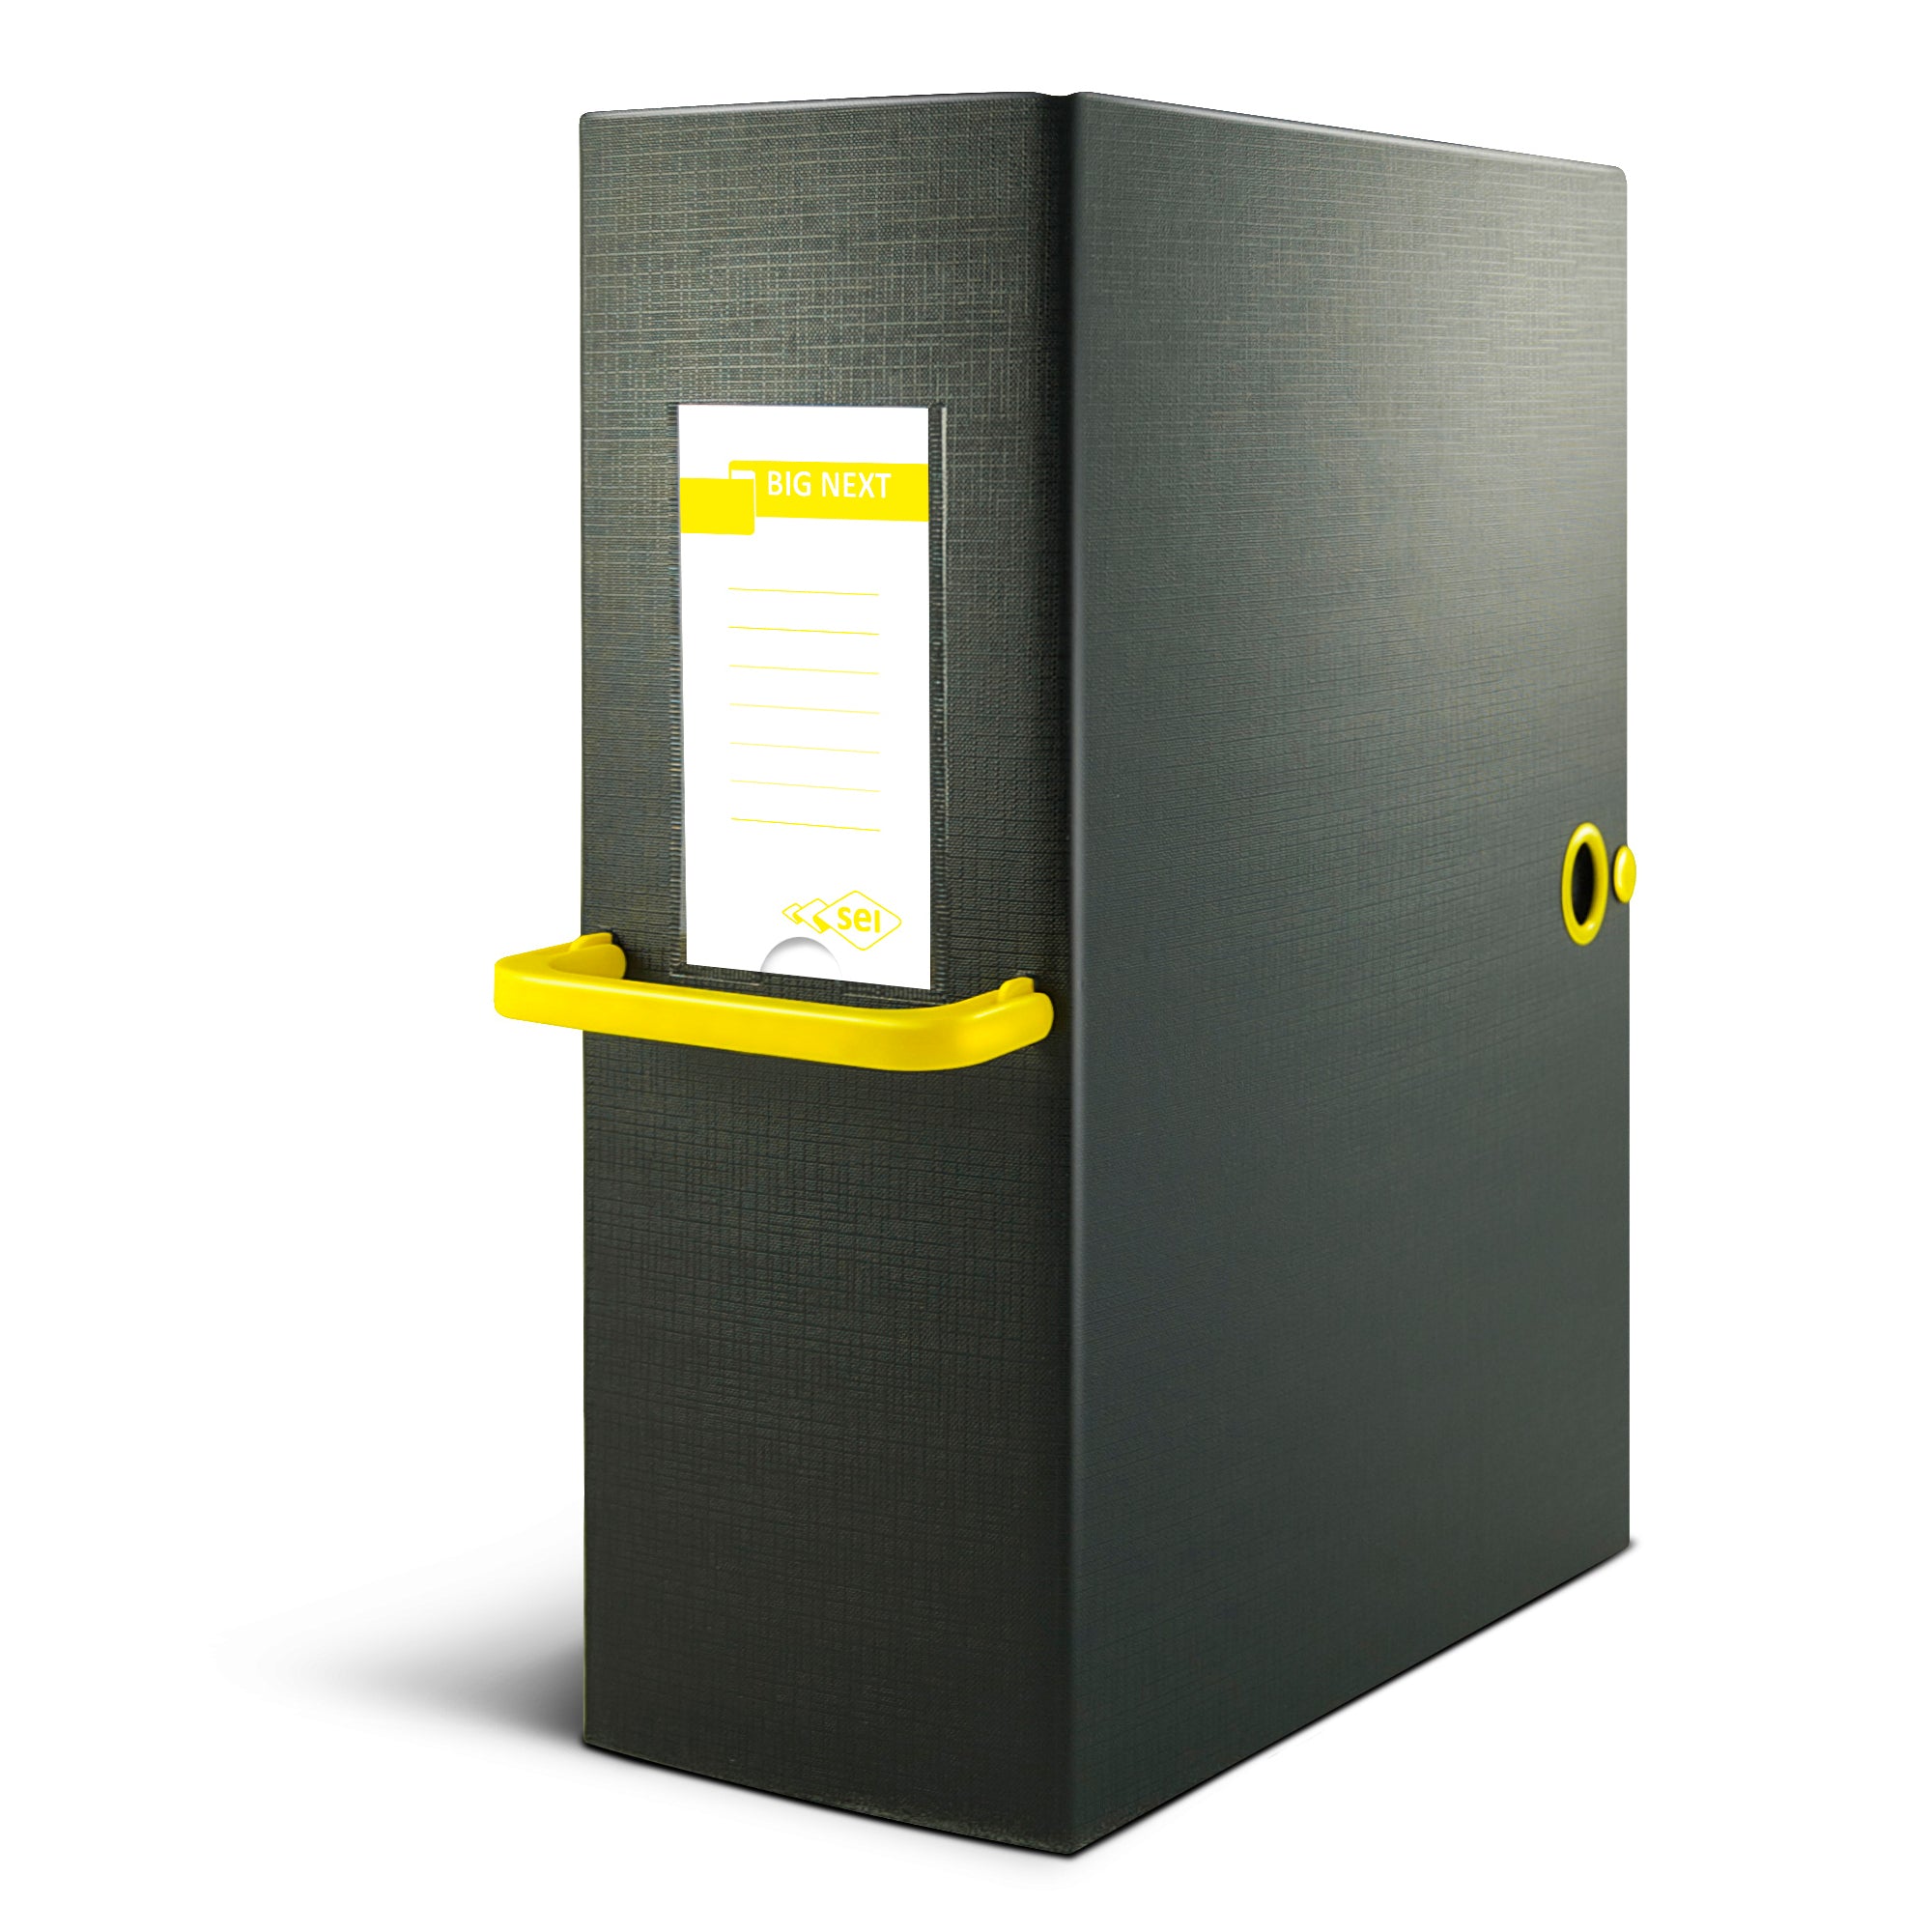 sei-rota-scatola-archivio-big-next-160-nero-giallo-25x35cm-dorso-16cm